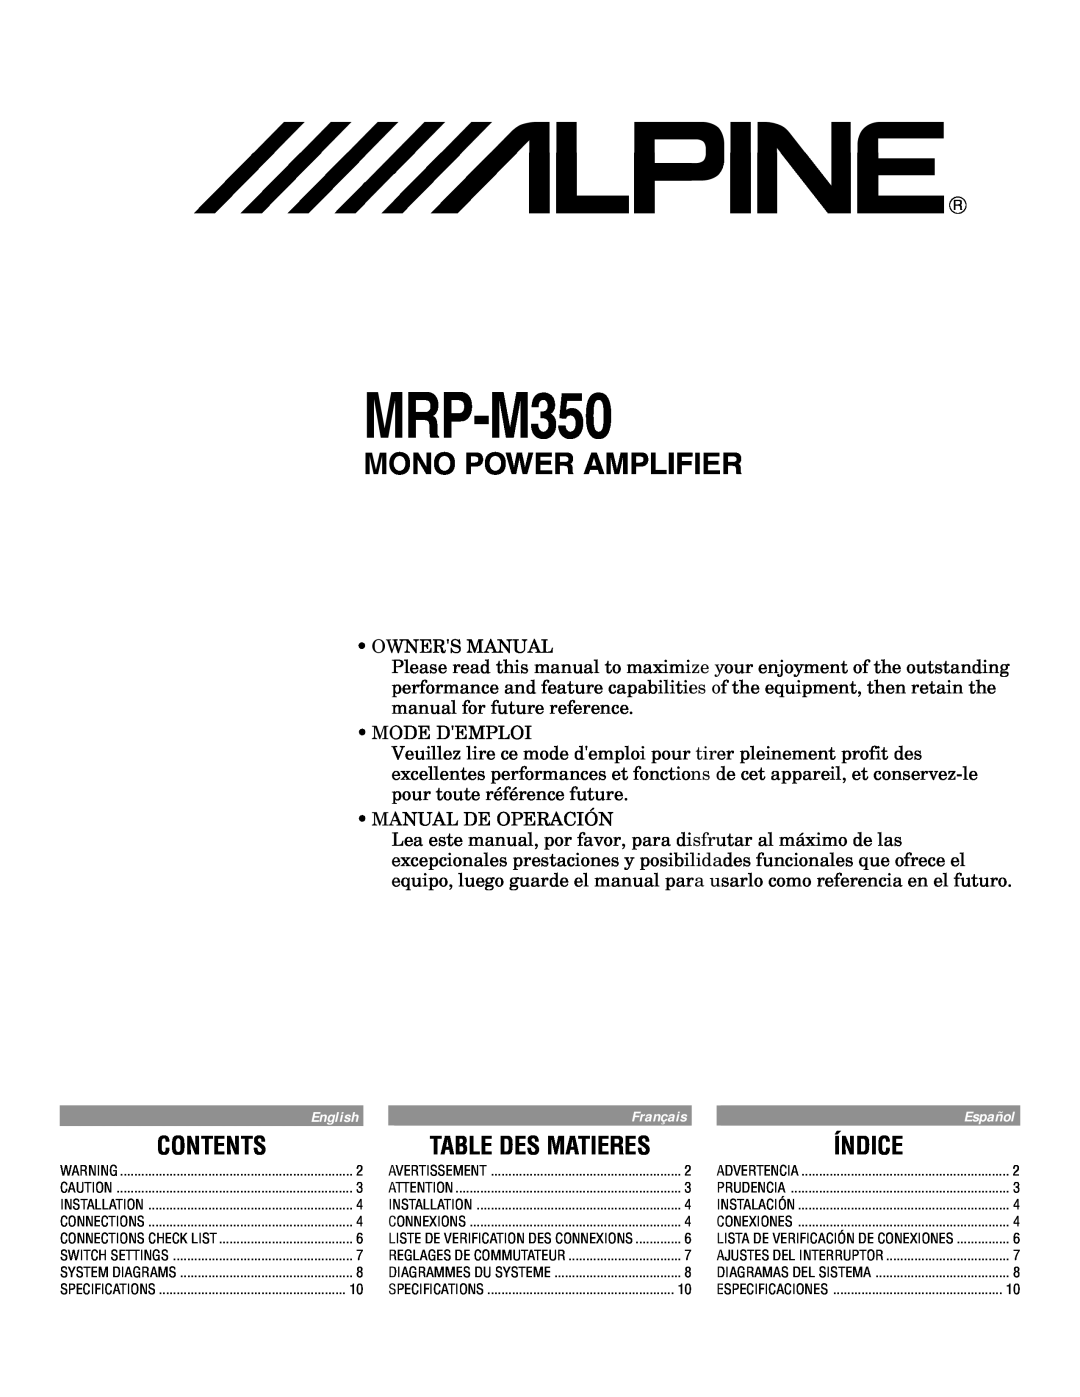 Alpine MRP-M350 owner manual Contents, Table Des Matieres, Índice, Mono Power Amplifier 